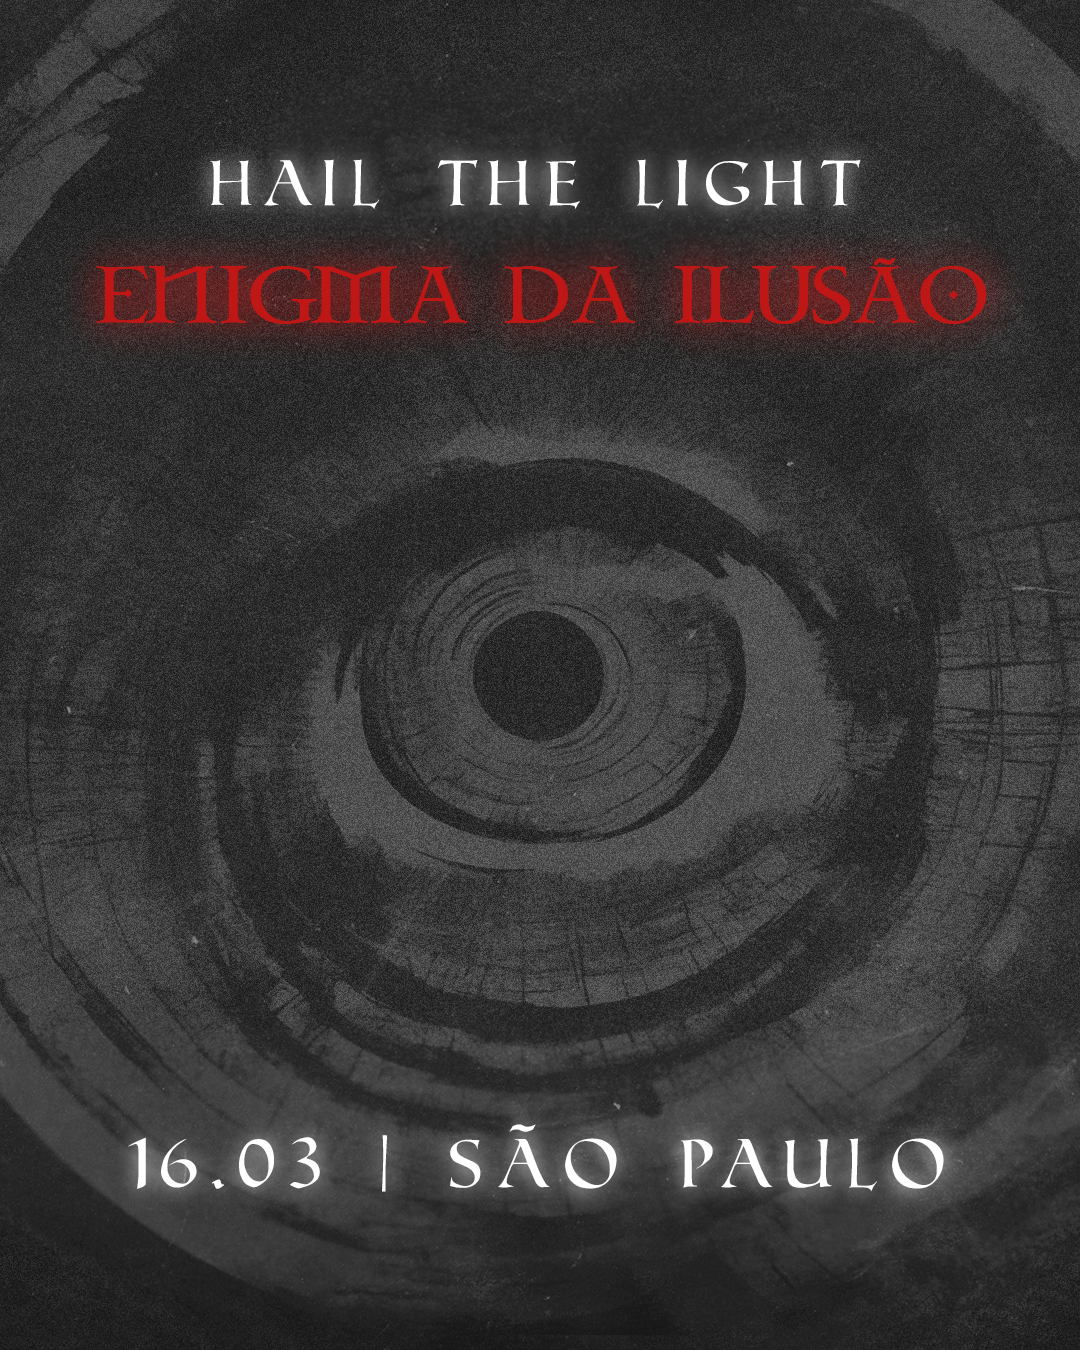 Hail The Light - Enigma da Ilusão - Página frontal